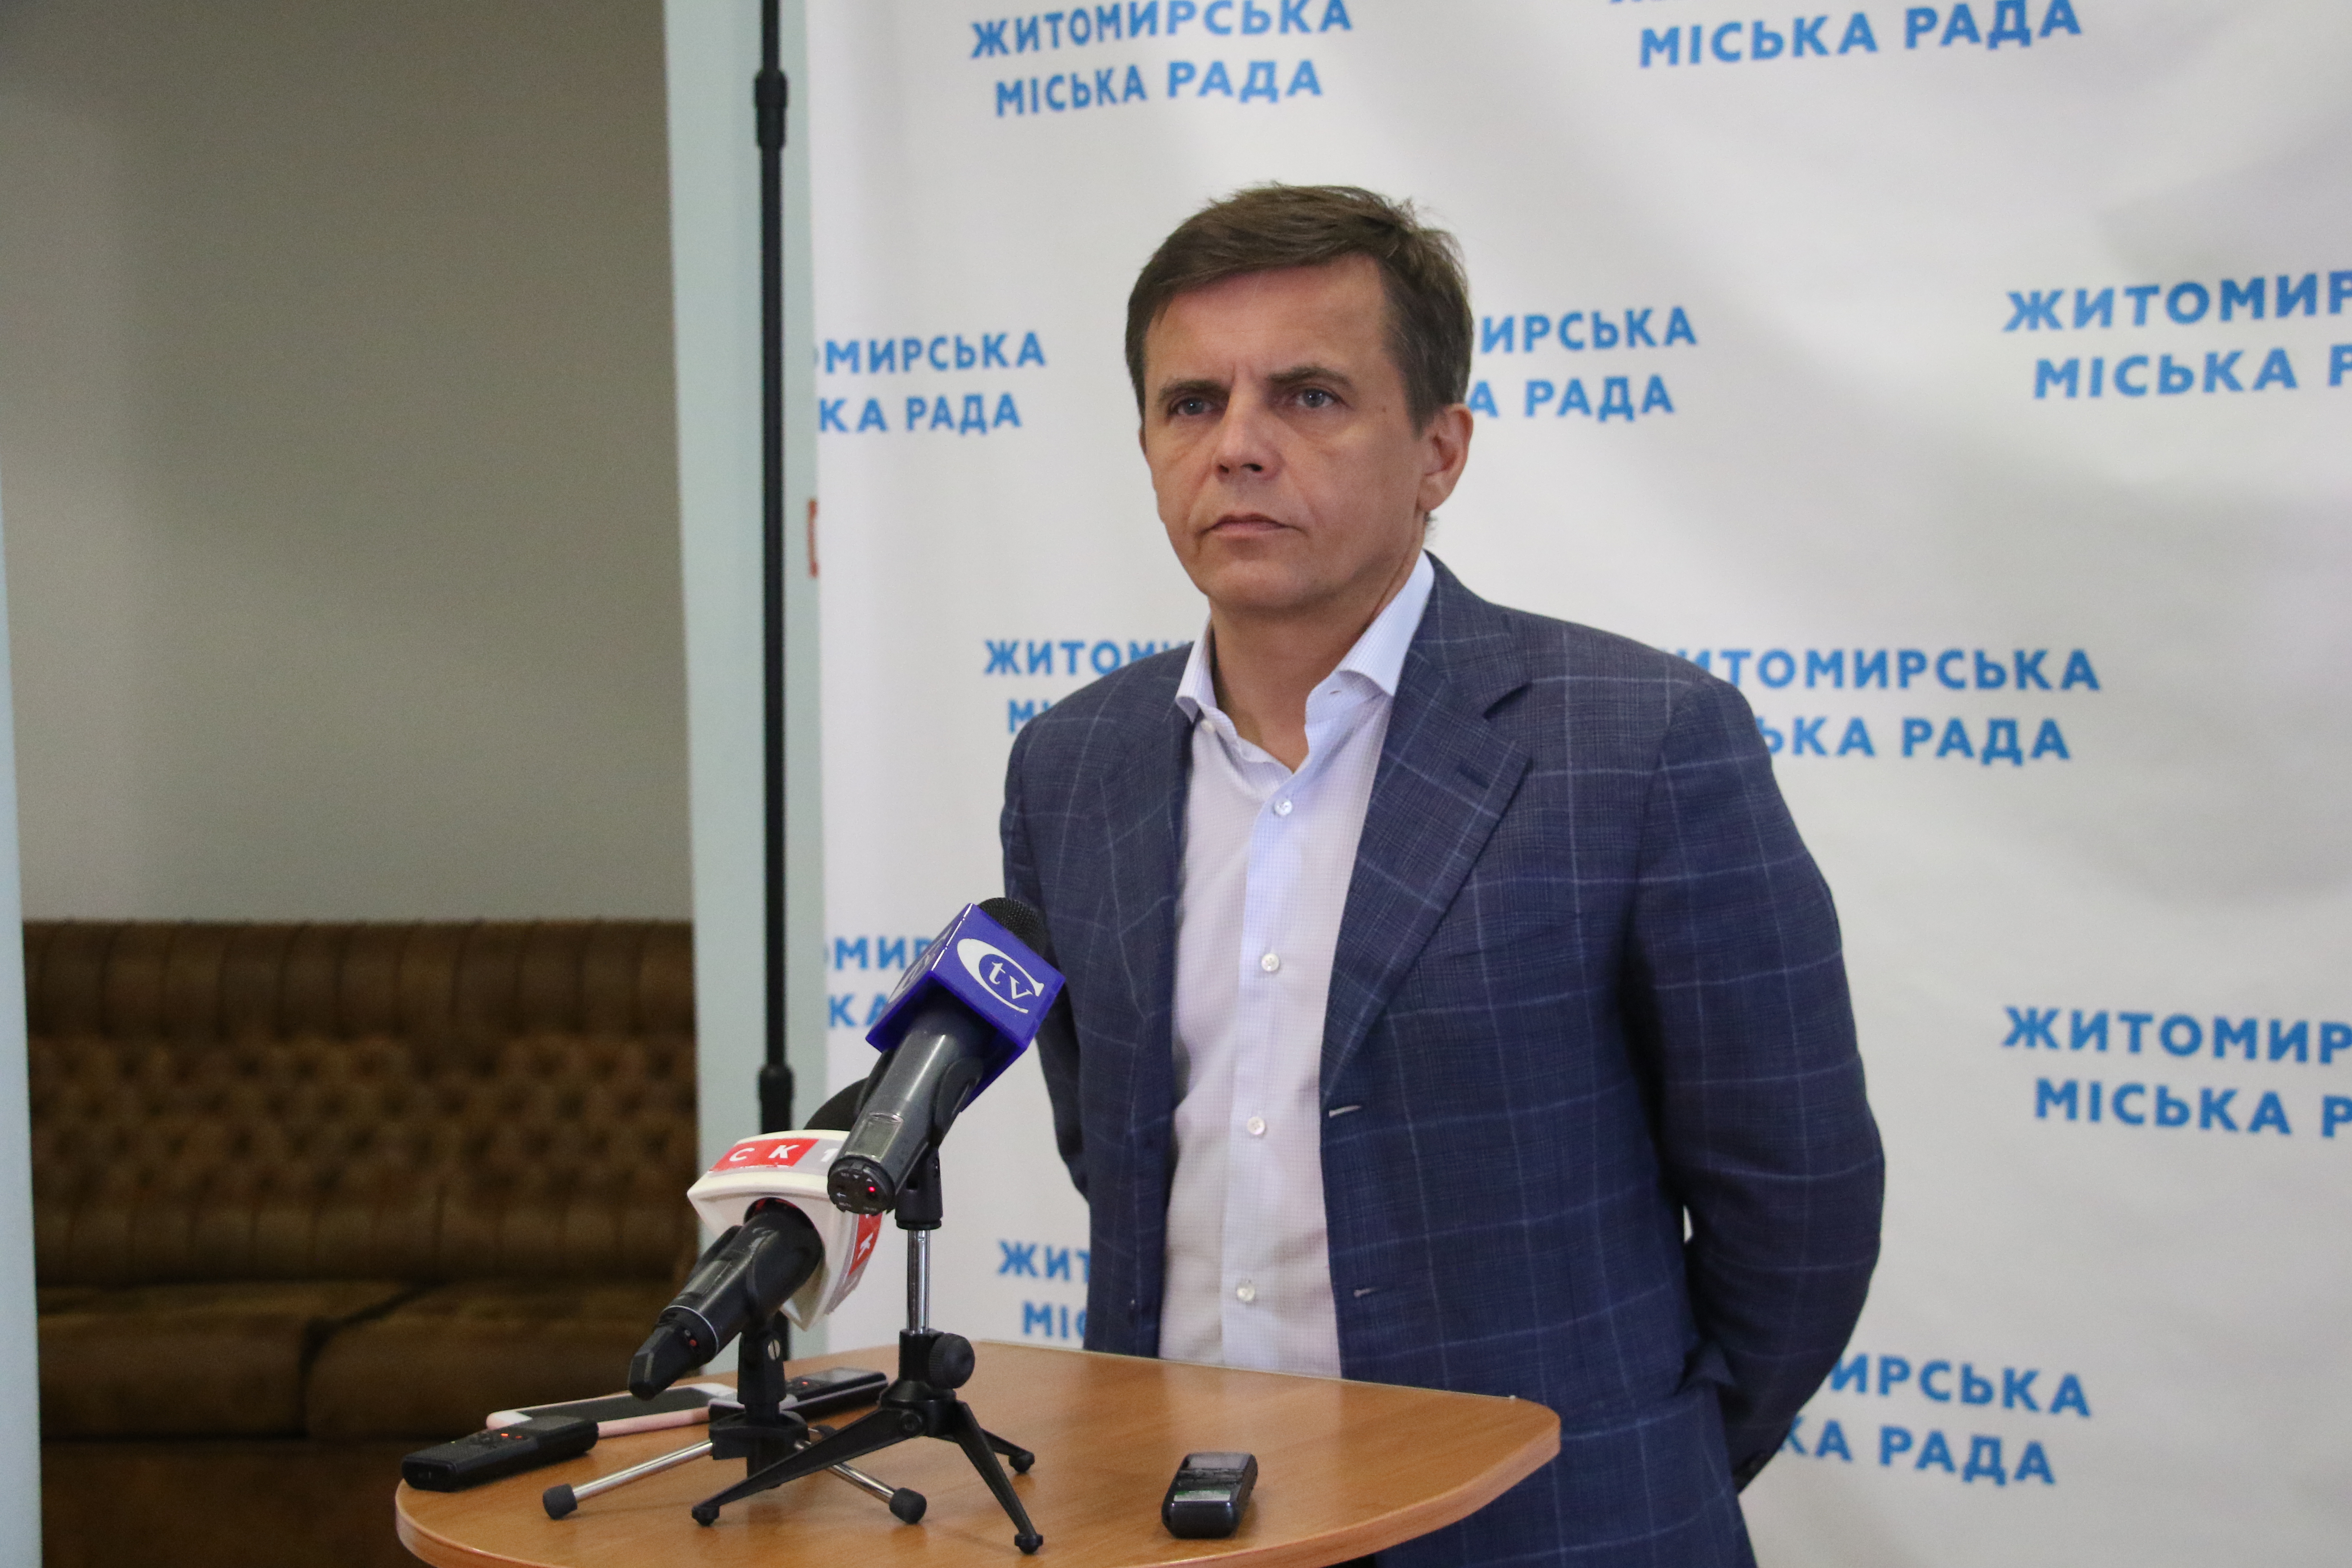 Сергій Сухомлин: «До 1 вересня завершиться верифікація проектів бюджету участі»  